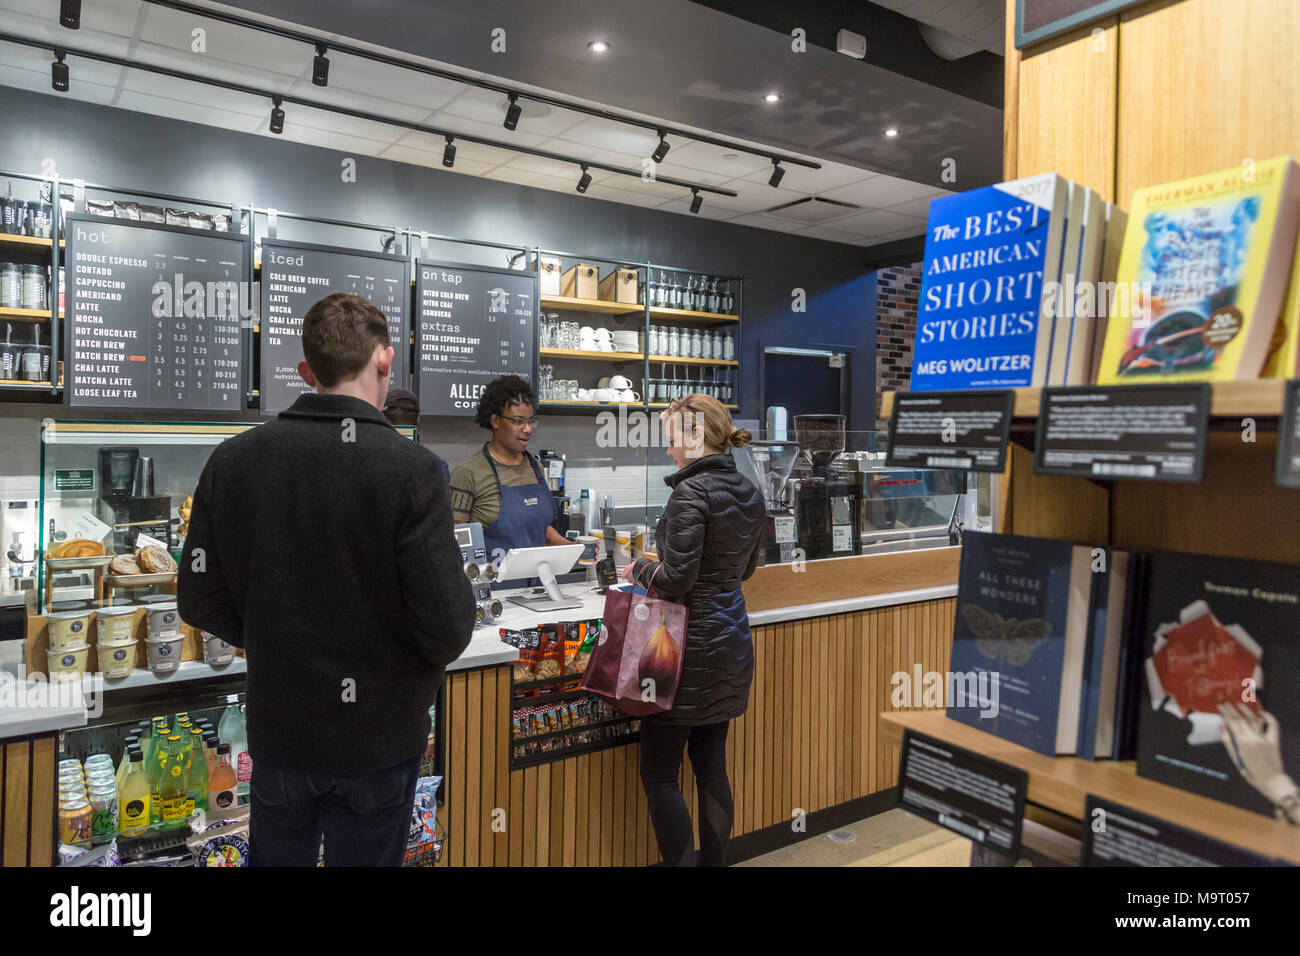 Washington, DC - Le café de la librairie Amazon à Washington en quartier de Georgetown. Le magasin a ouvert ses portes dans un Barnes & Noble b Banque D'Images